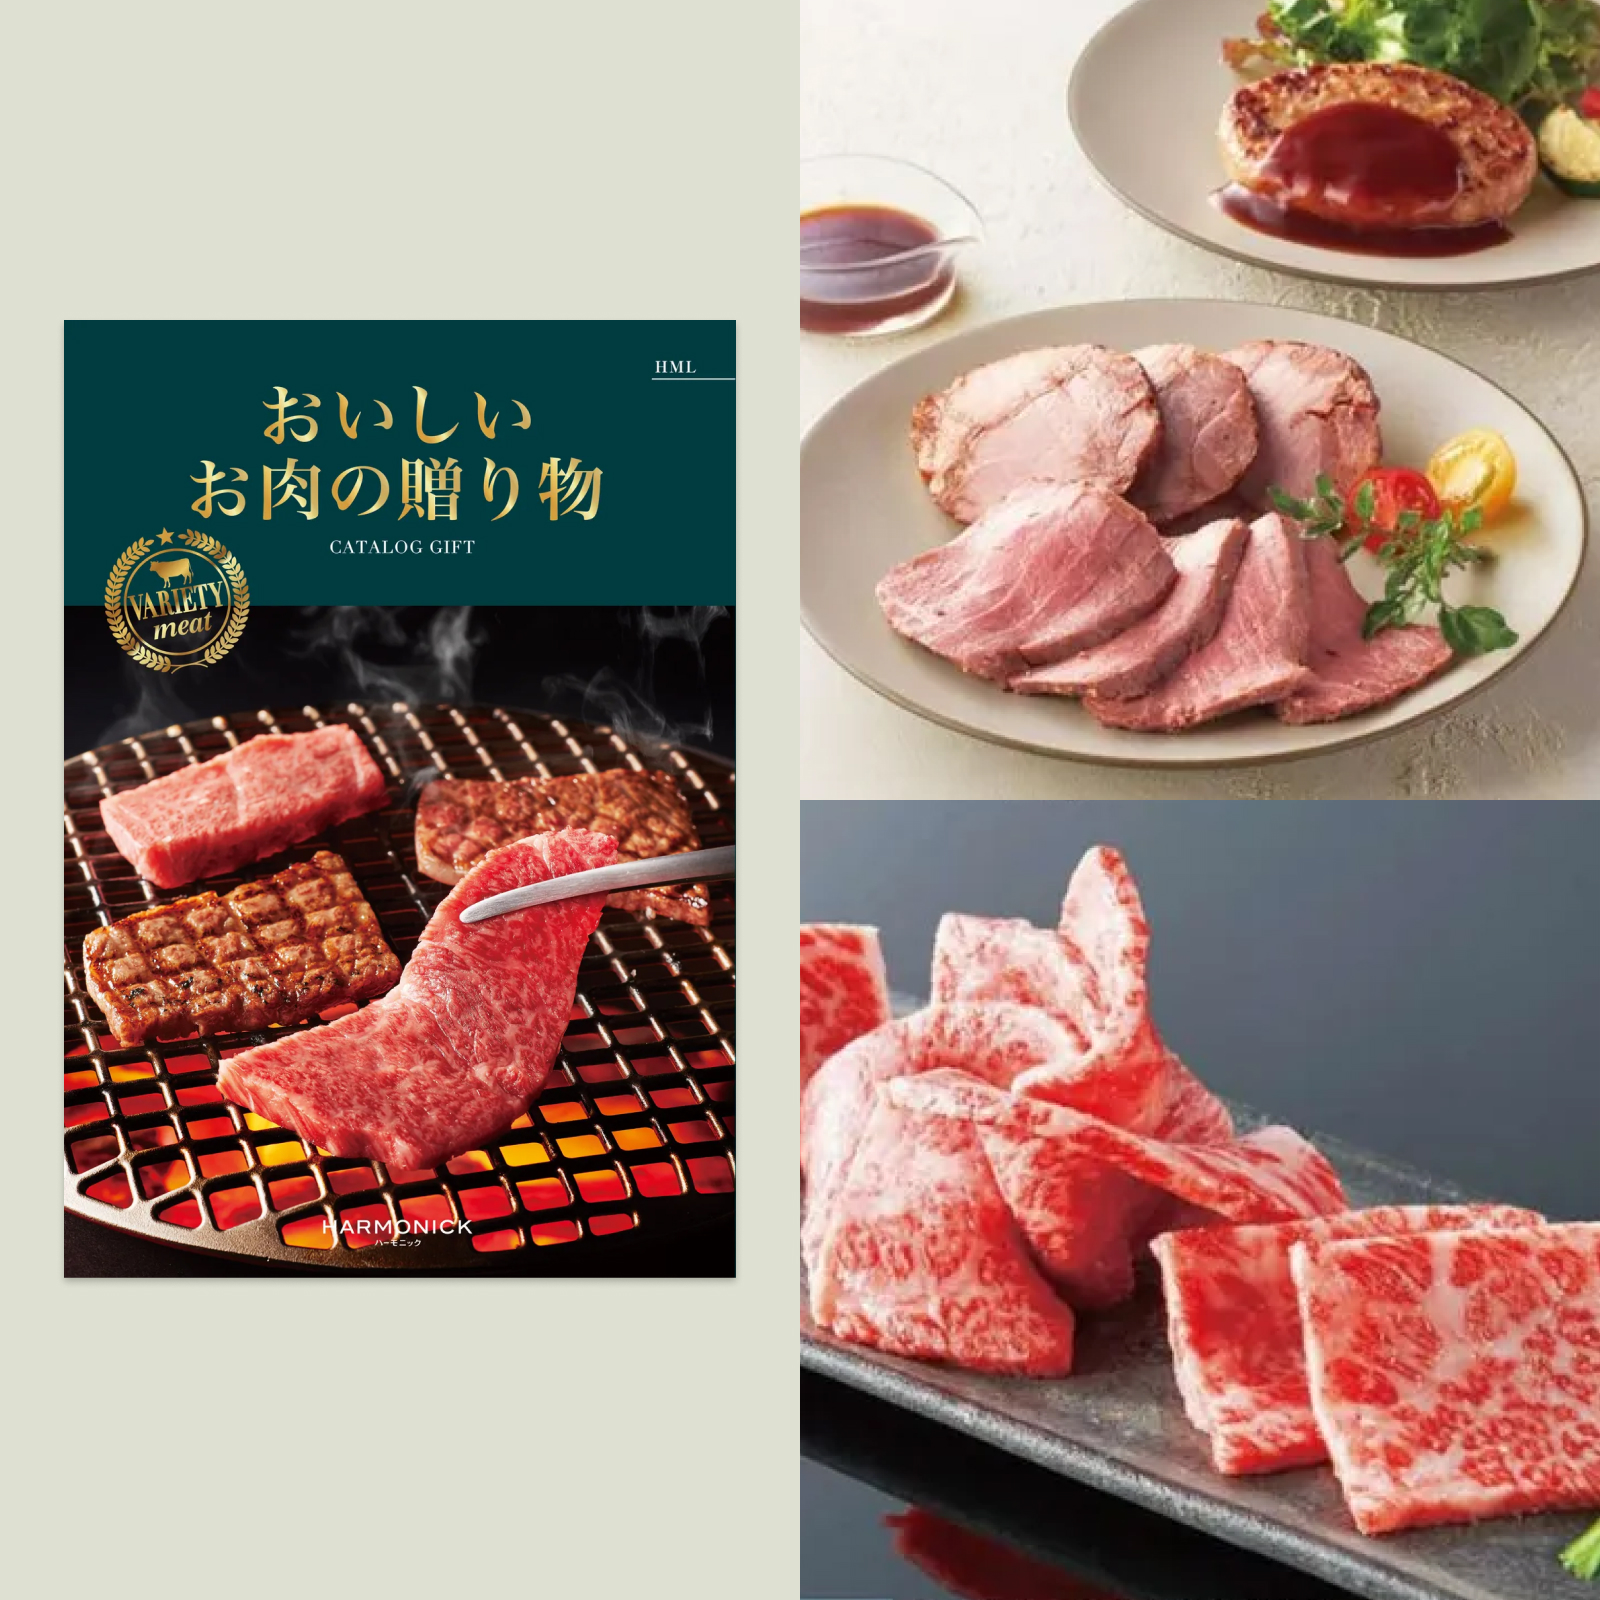 ハーモニック 「おいしいお肉の贈り物」 20000円コース - カタログギフト